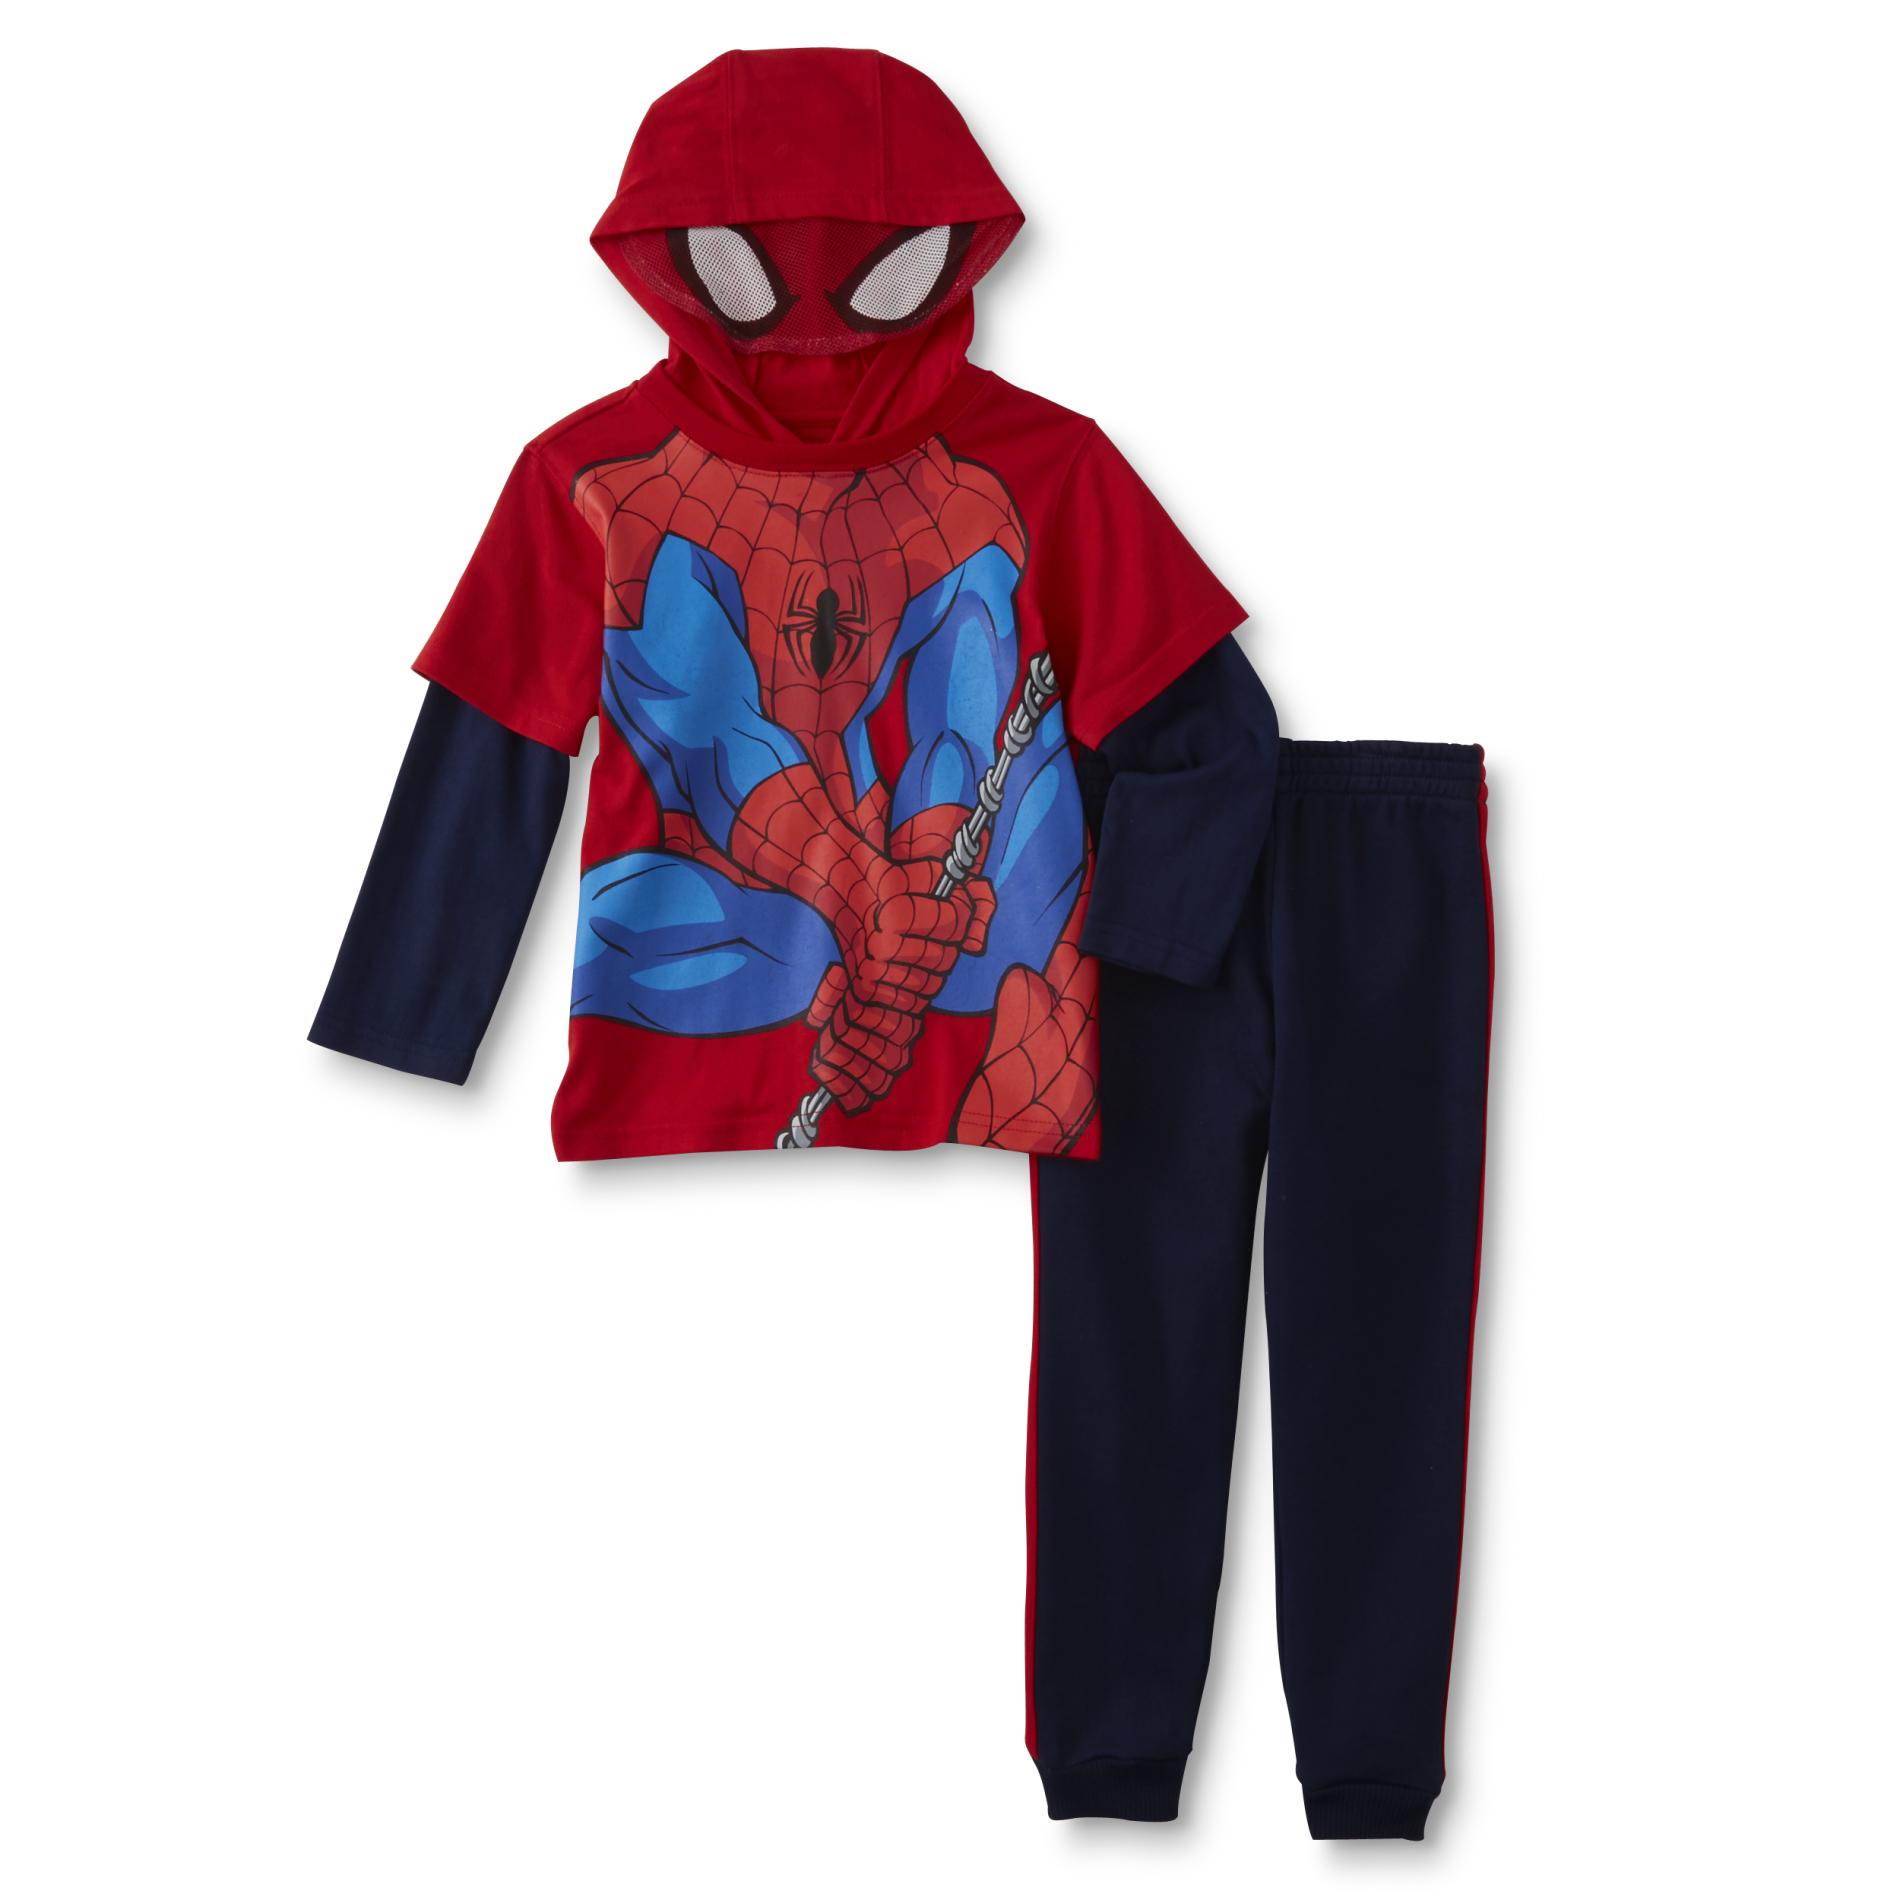 Marvel Spider-Man Infant & Toddler Boy's Hooded Costume Shirt & Pants